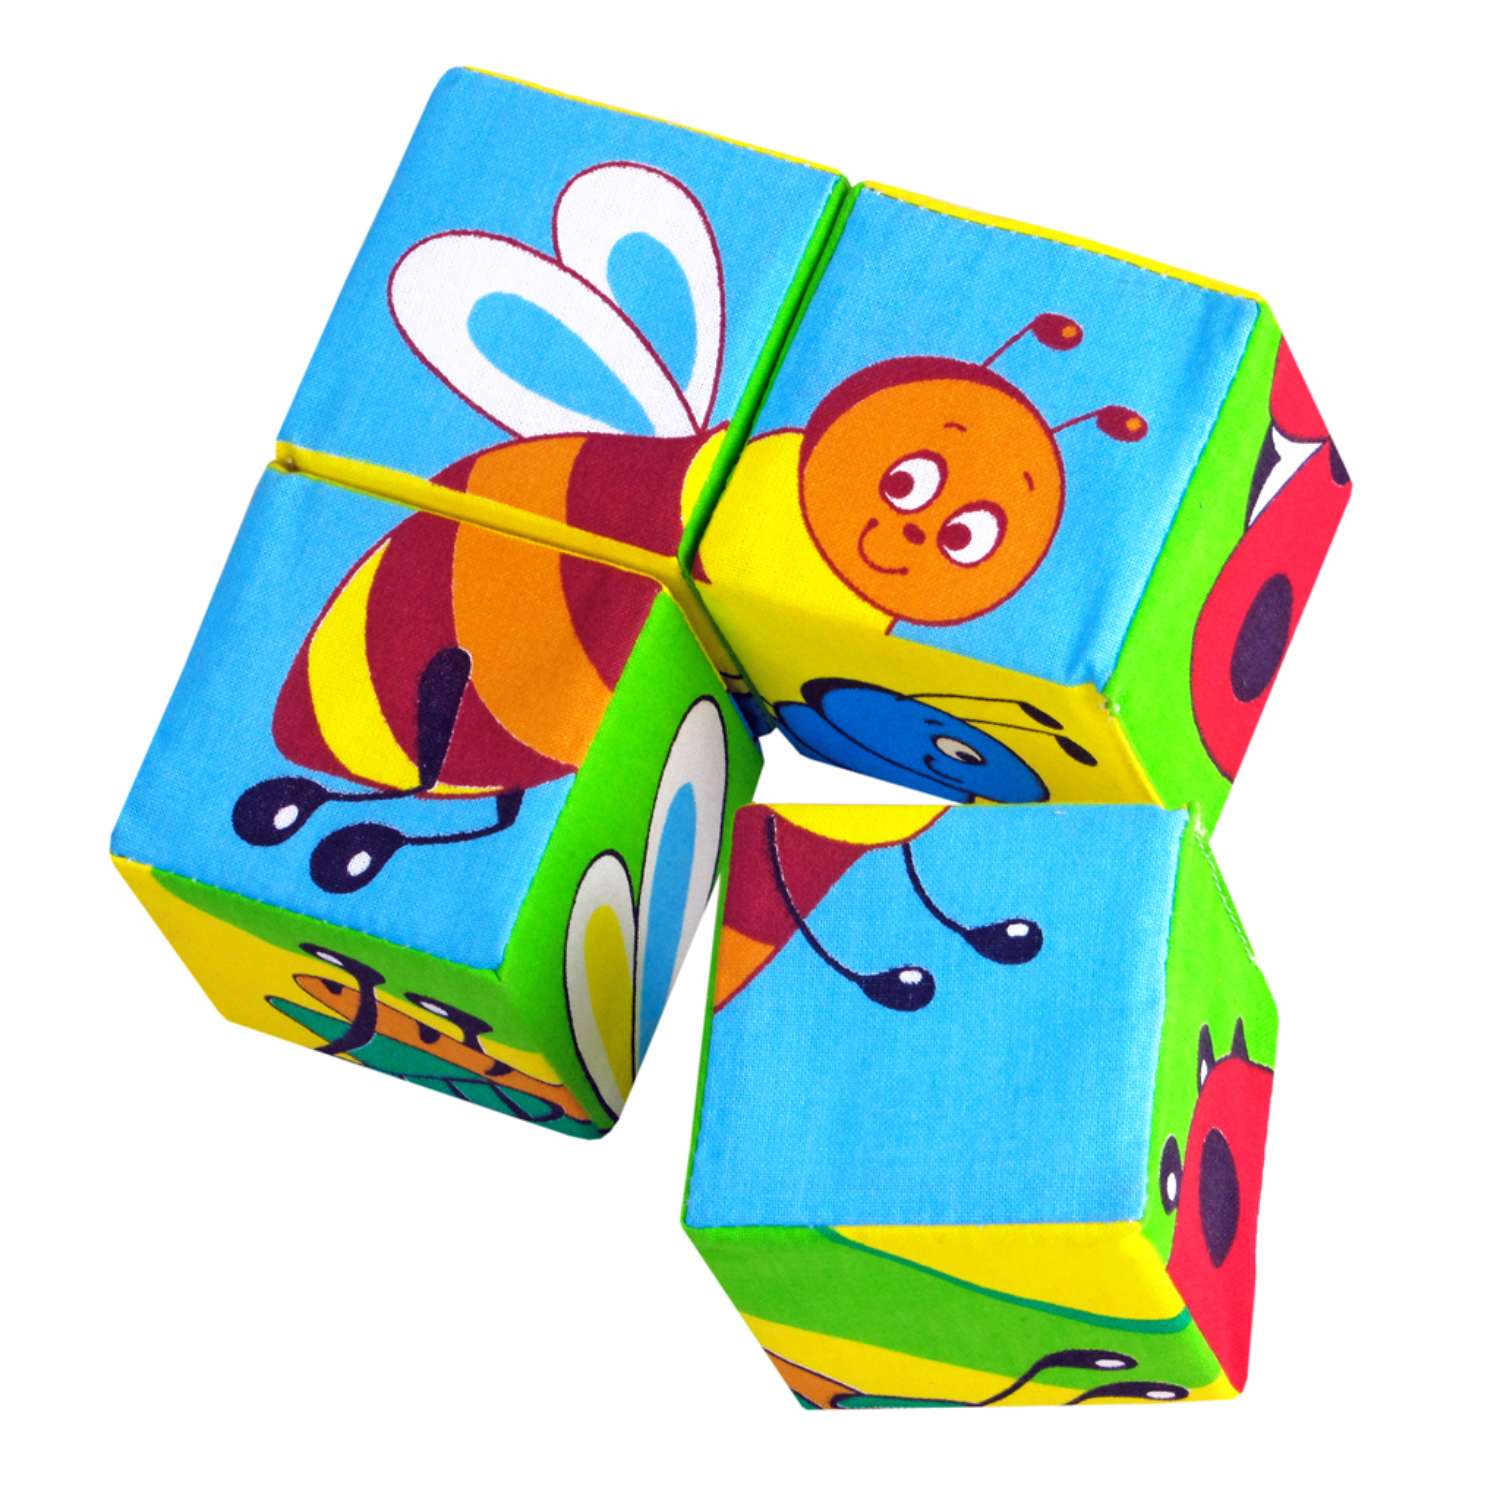 Мастер-класс по изготовлению мягких кубиков для детей | Высоцкая Life